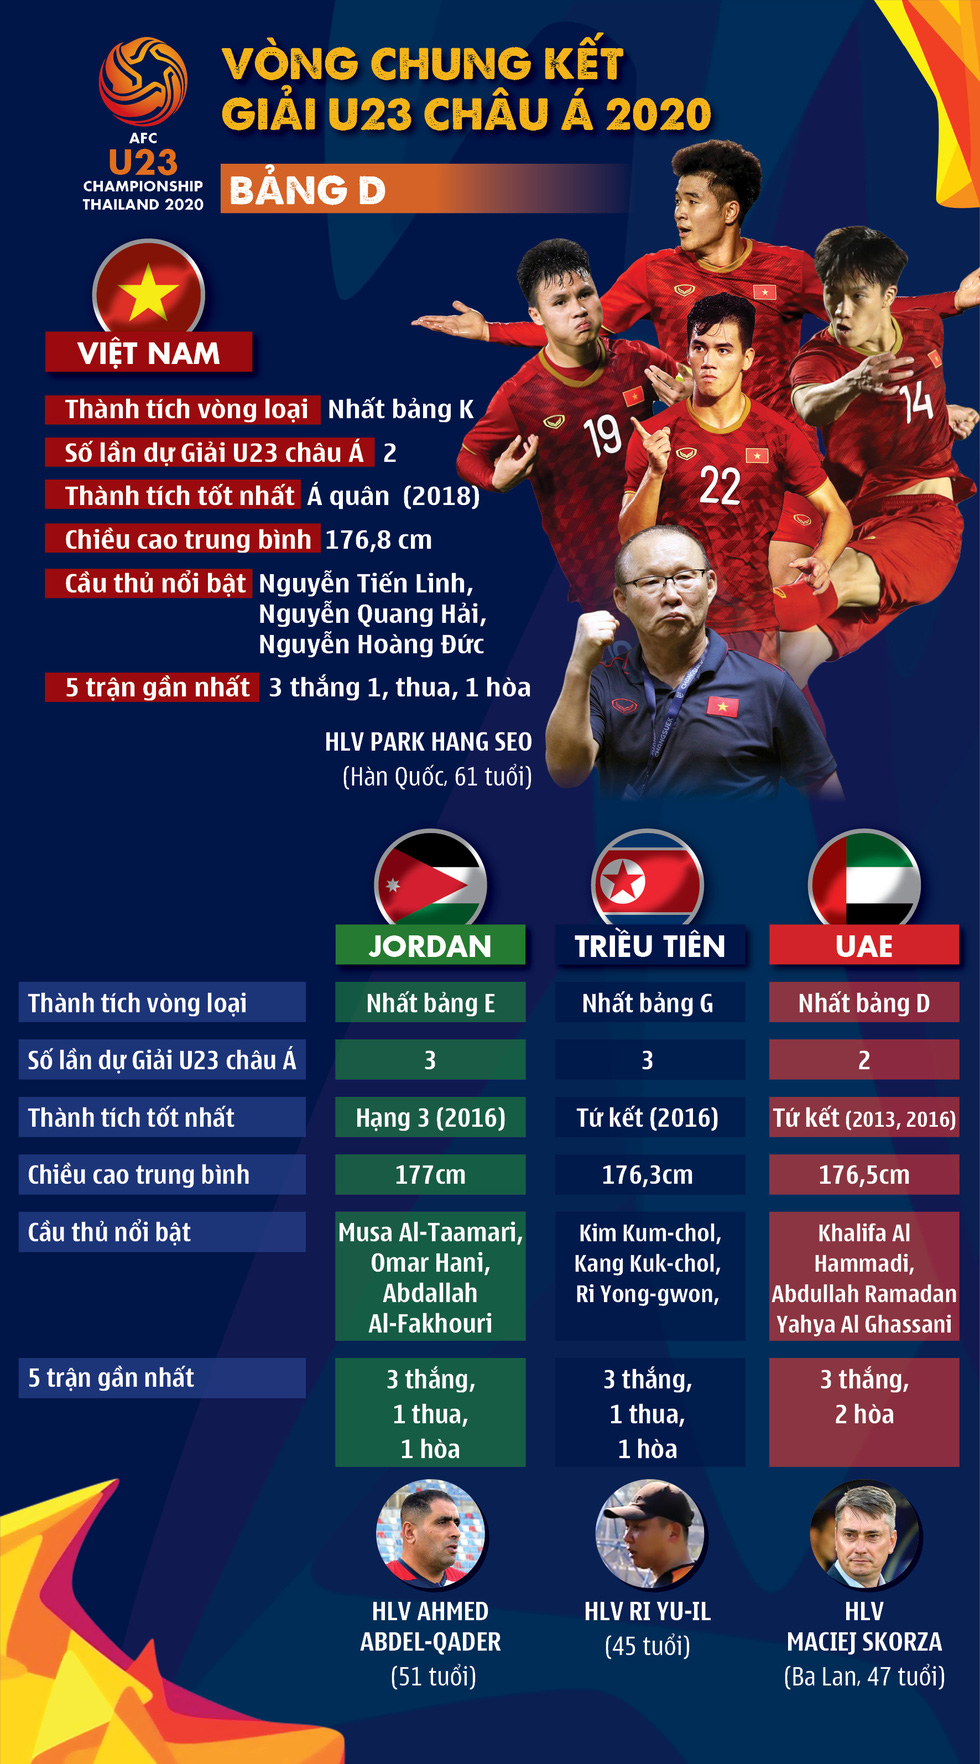 Chân dung U23 Việt Nam và các đội ở bảng D Giải U23 châu Á 2020 - Ảnh 1.